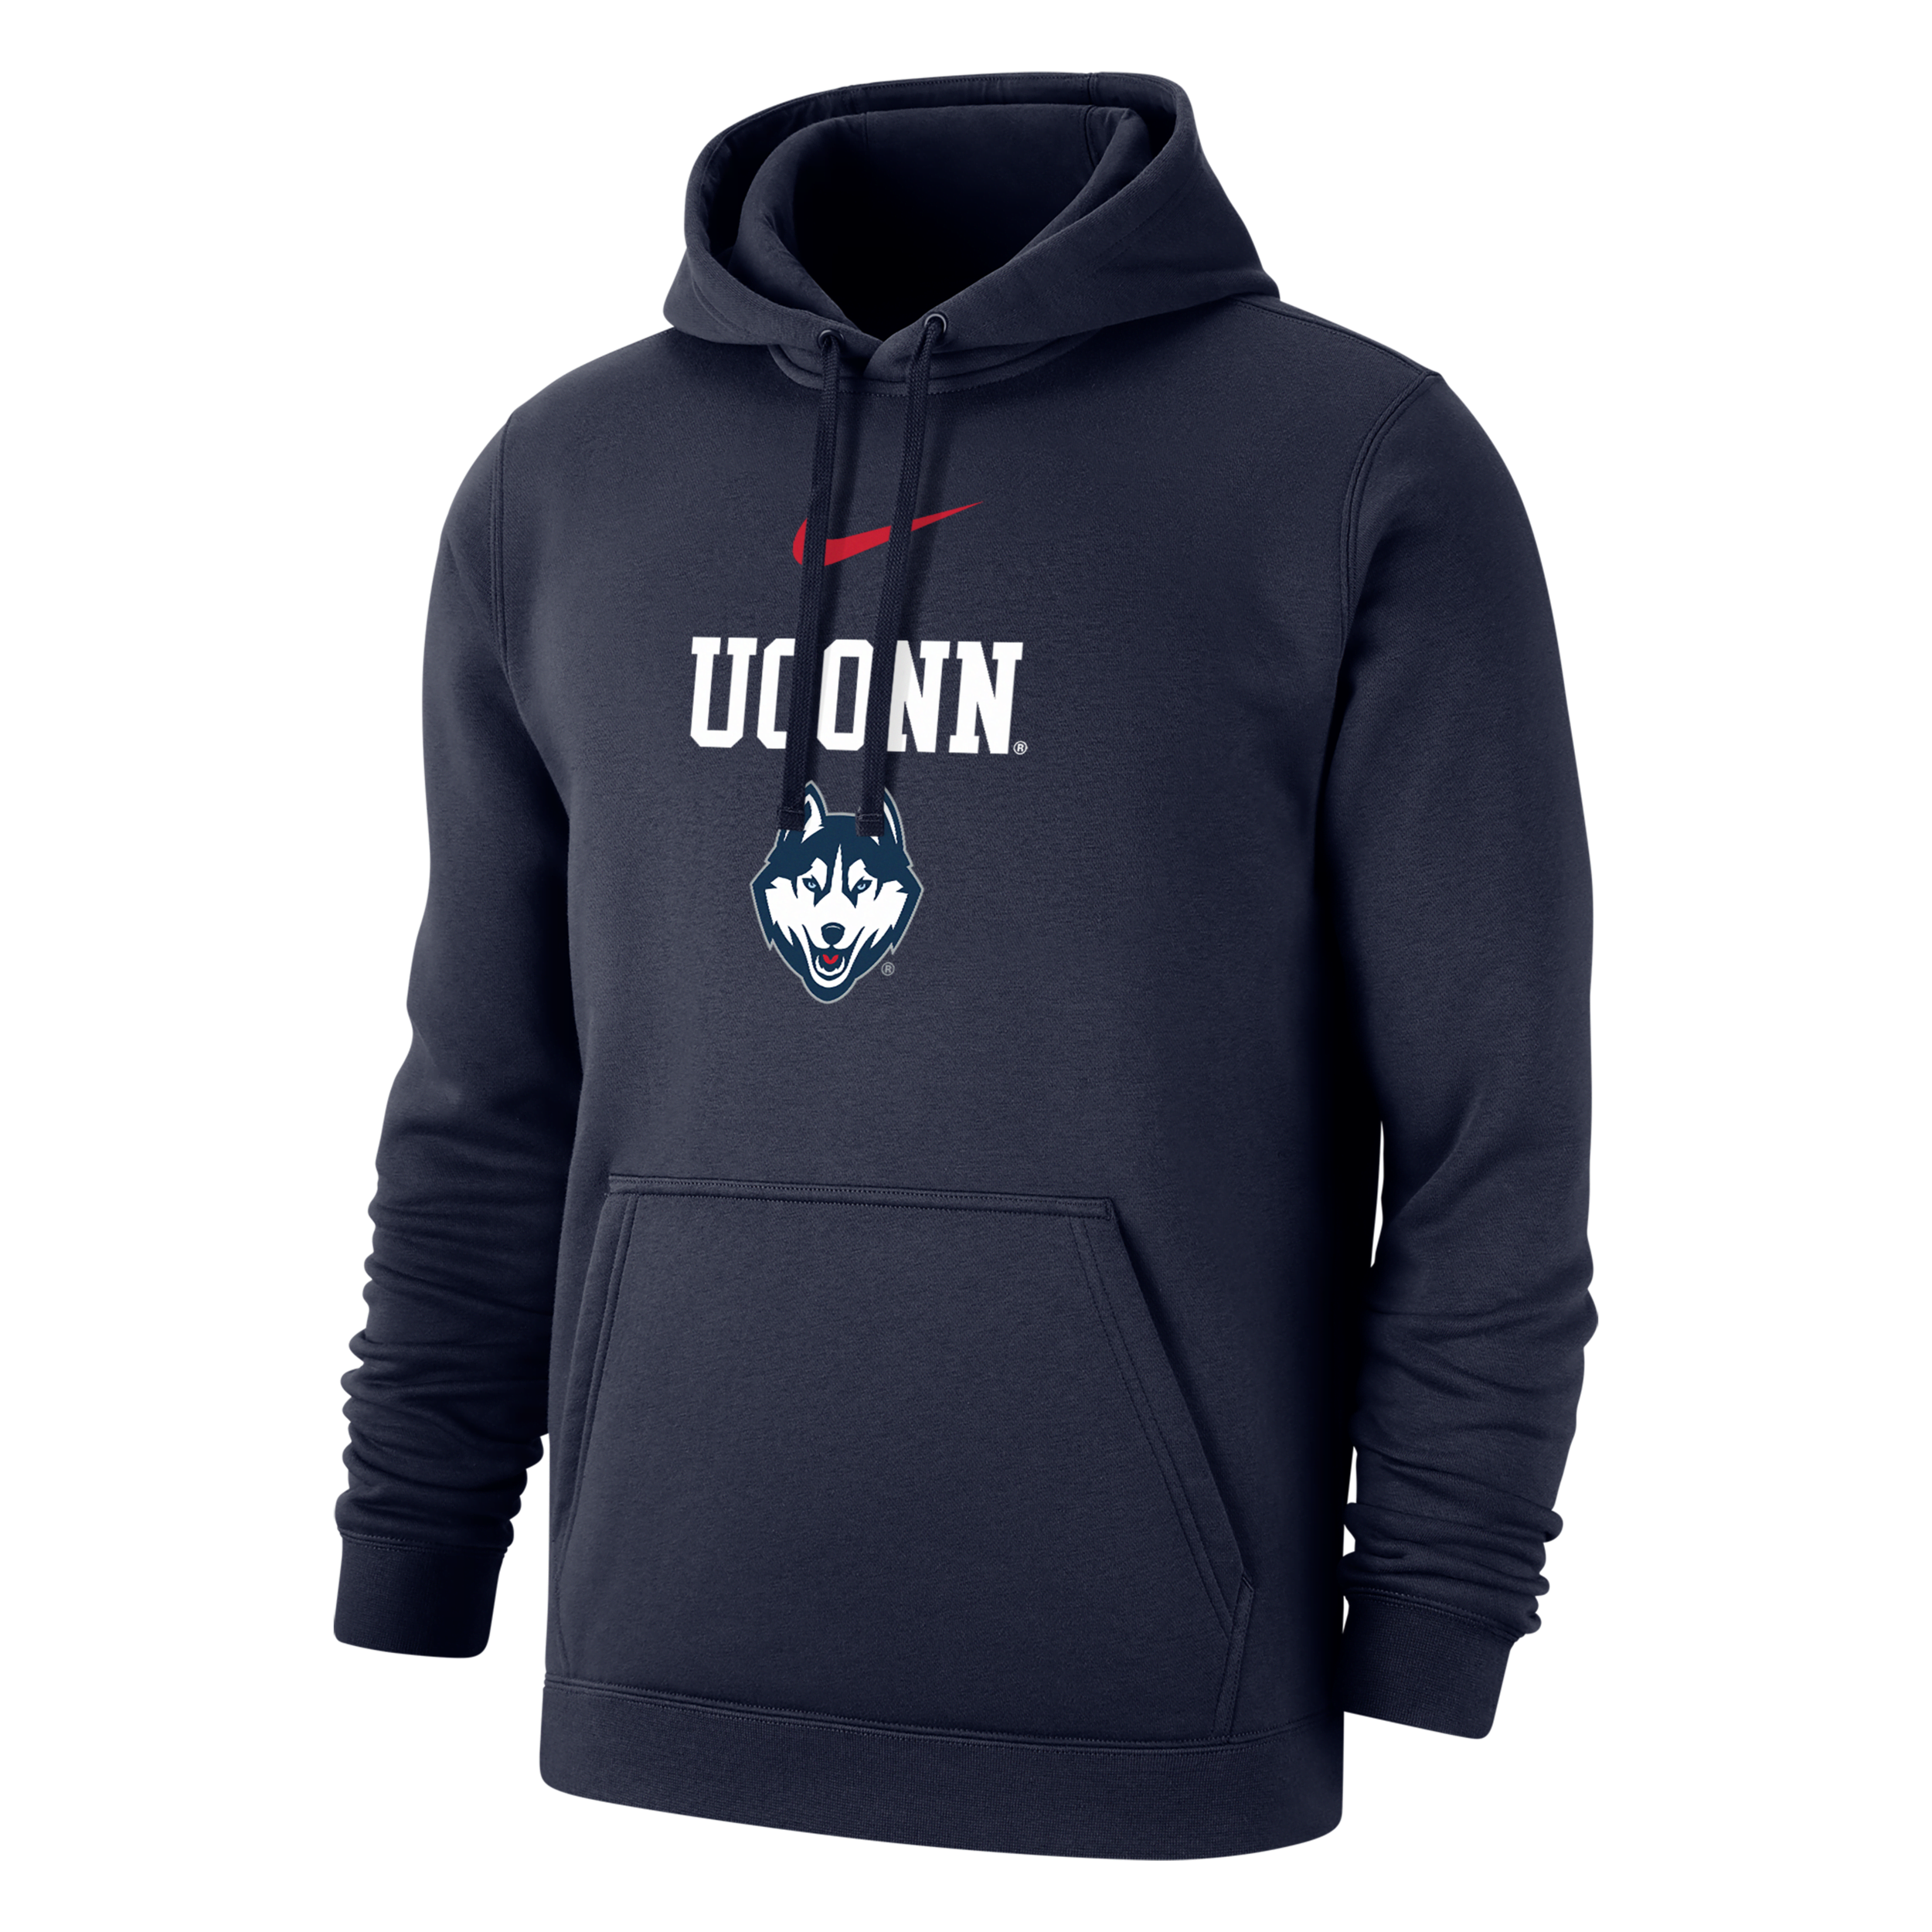 Nike Uconn Club Fleece  Men's College Hoodie In Black